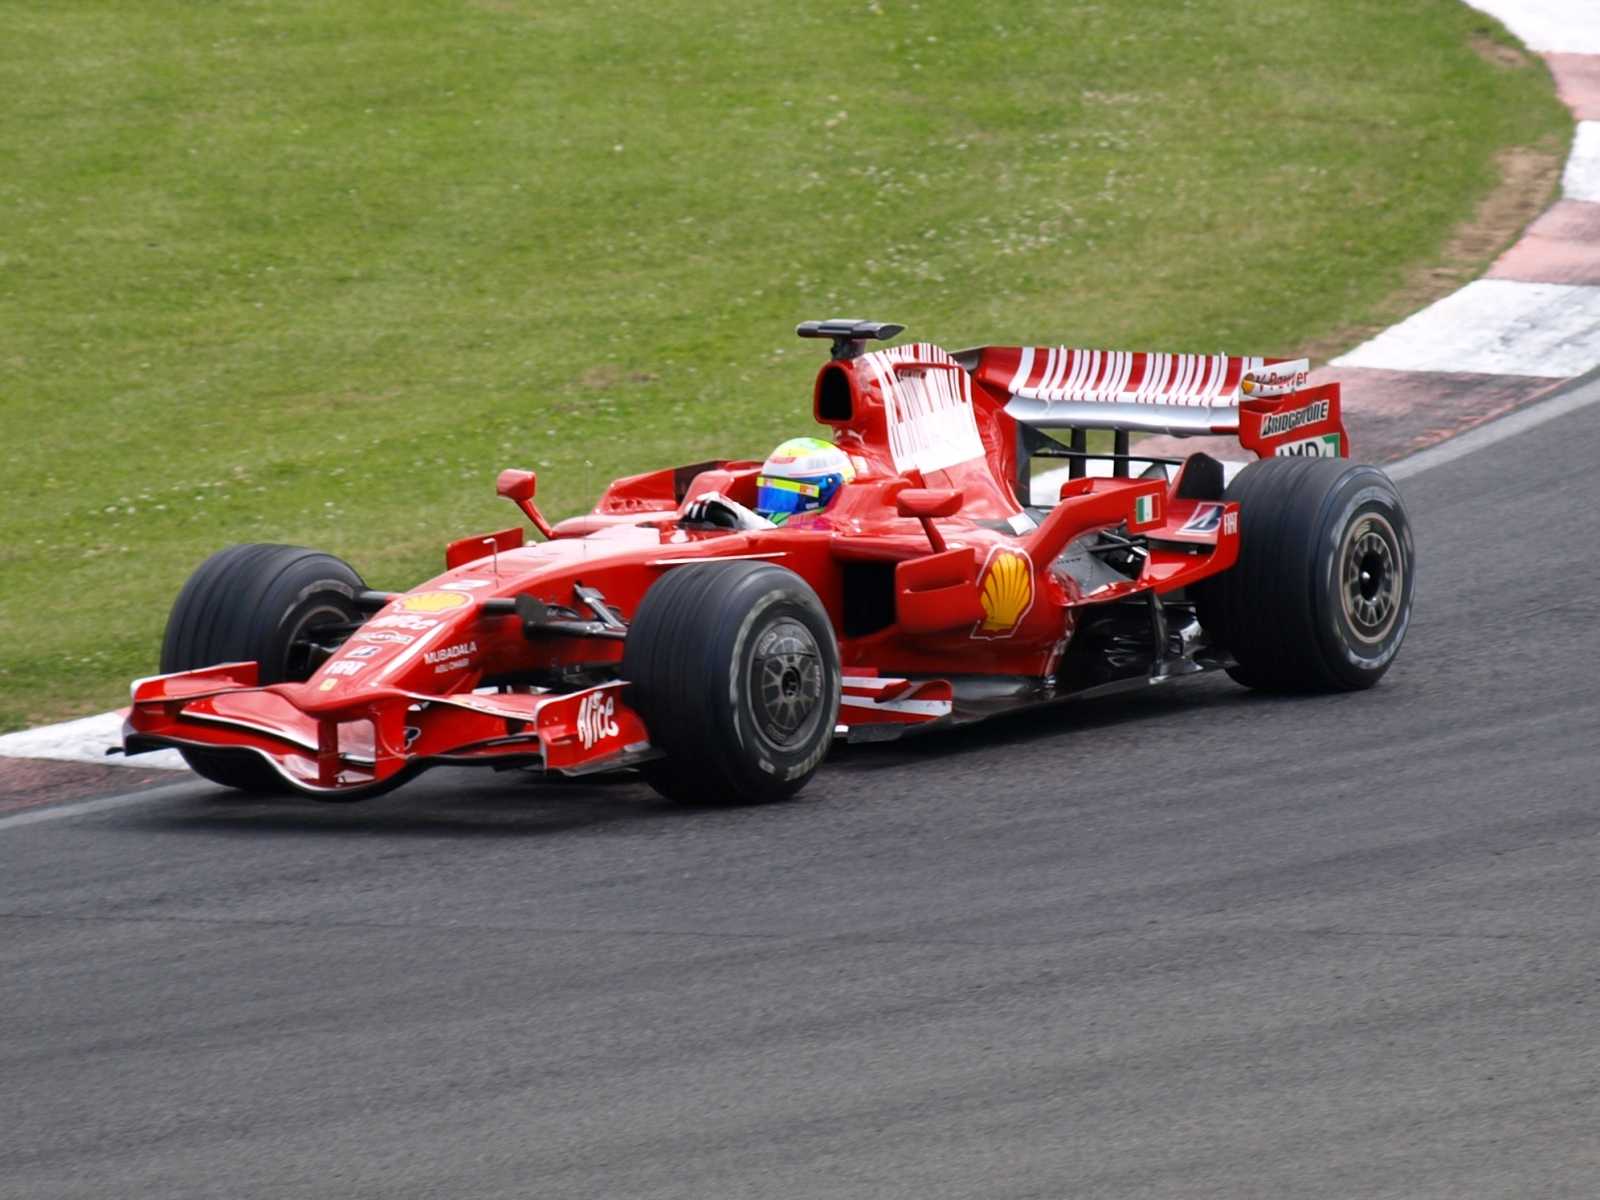 Comment Ferrari a annoncé la victoire de Hamilton pour écourter la célébration prématurée de la famille Massa